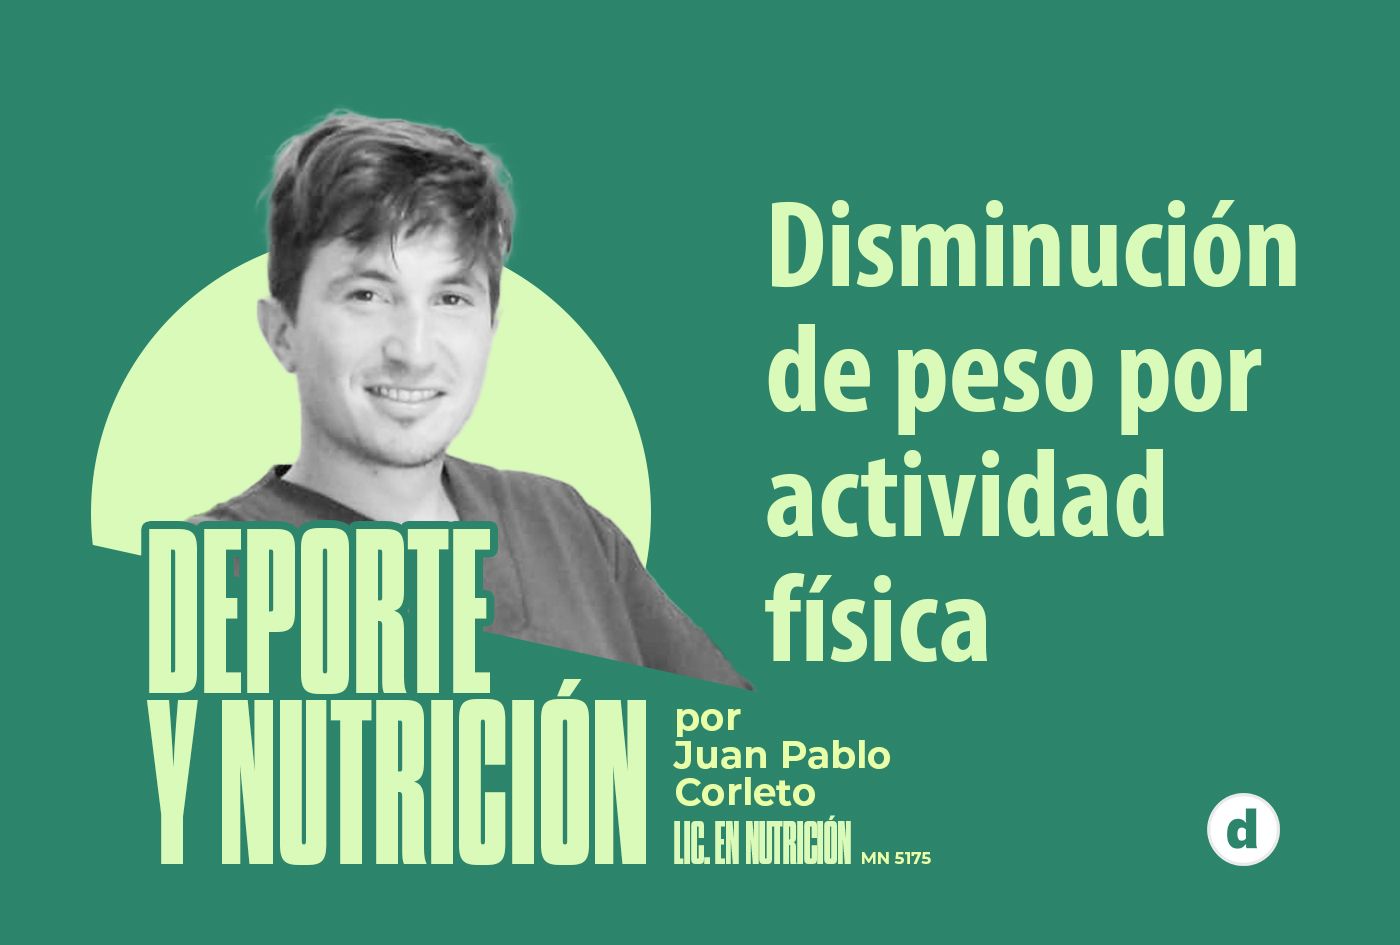 La columna del nutricionista Juan Pablo Corleto: “Disminución de peso por actividad física”